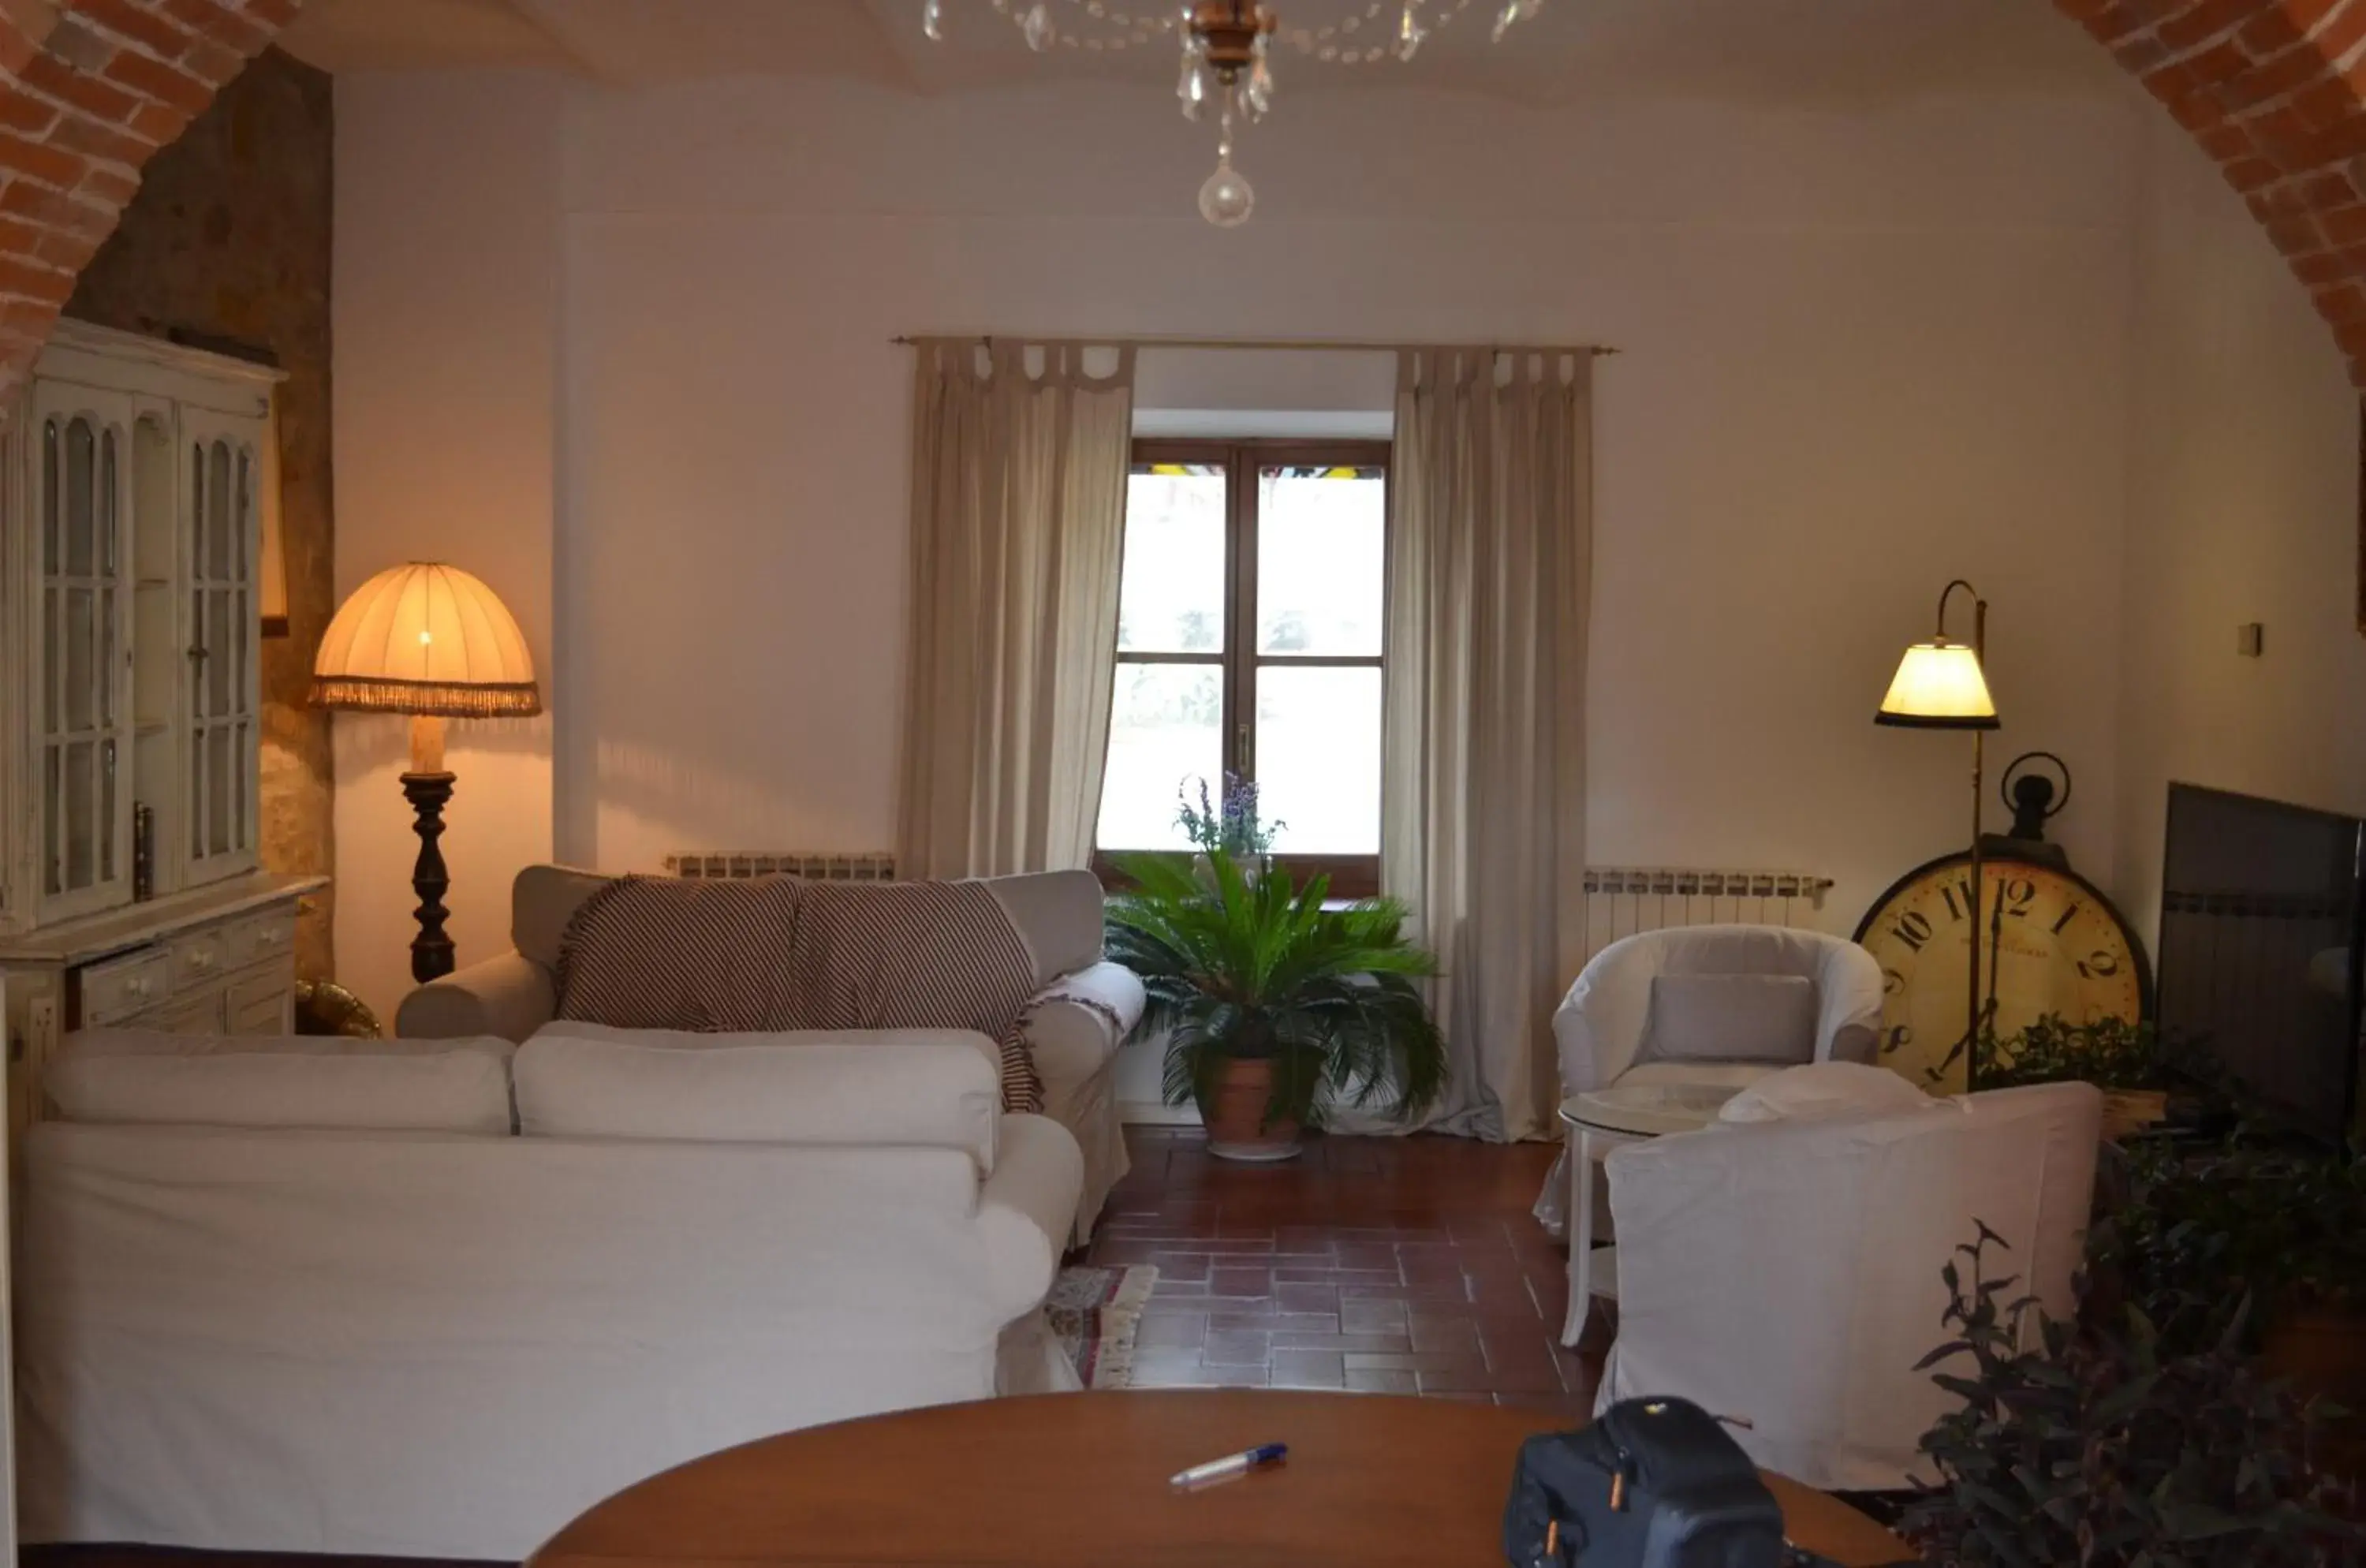 Lounge or bar, Seating Area in Villa Schiatti